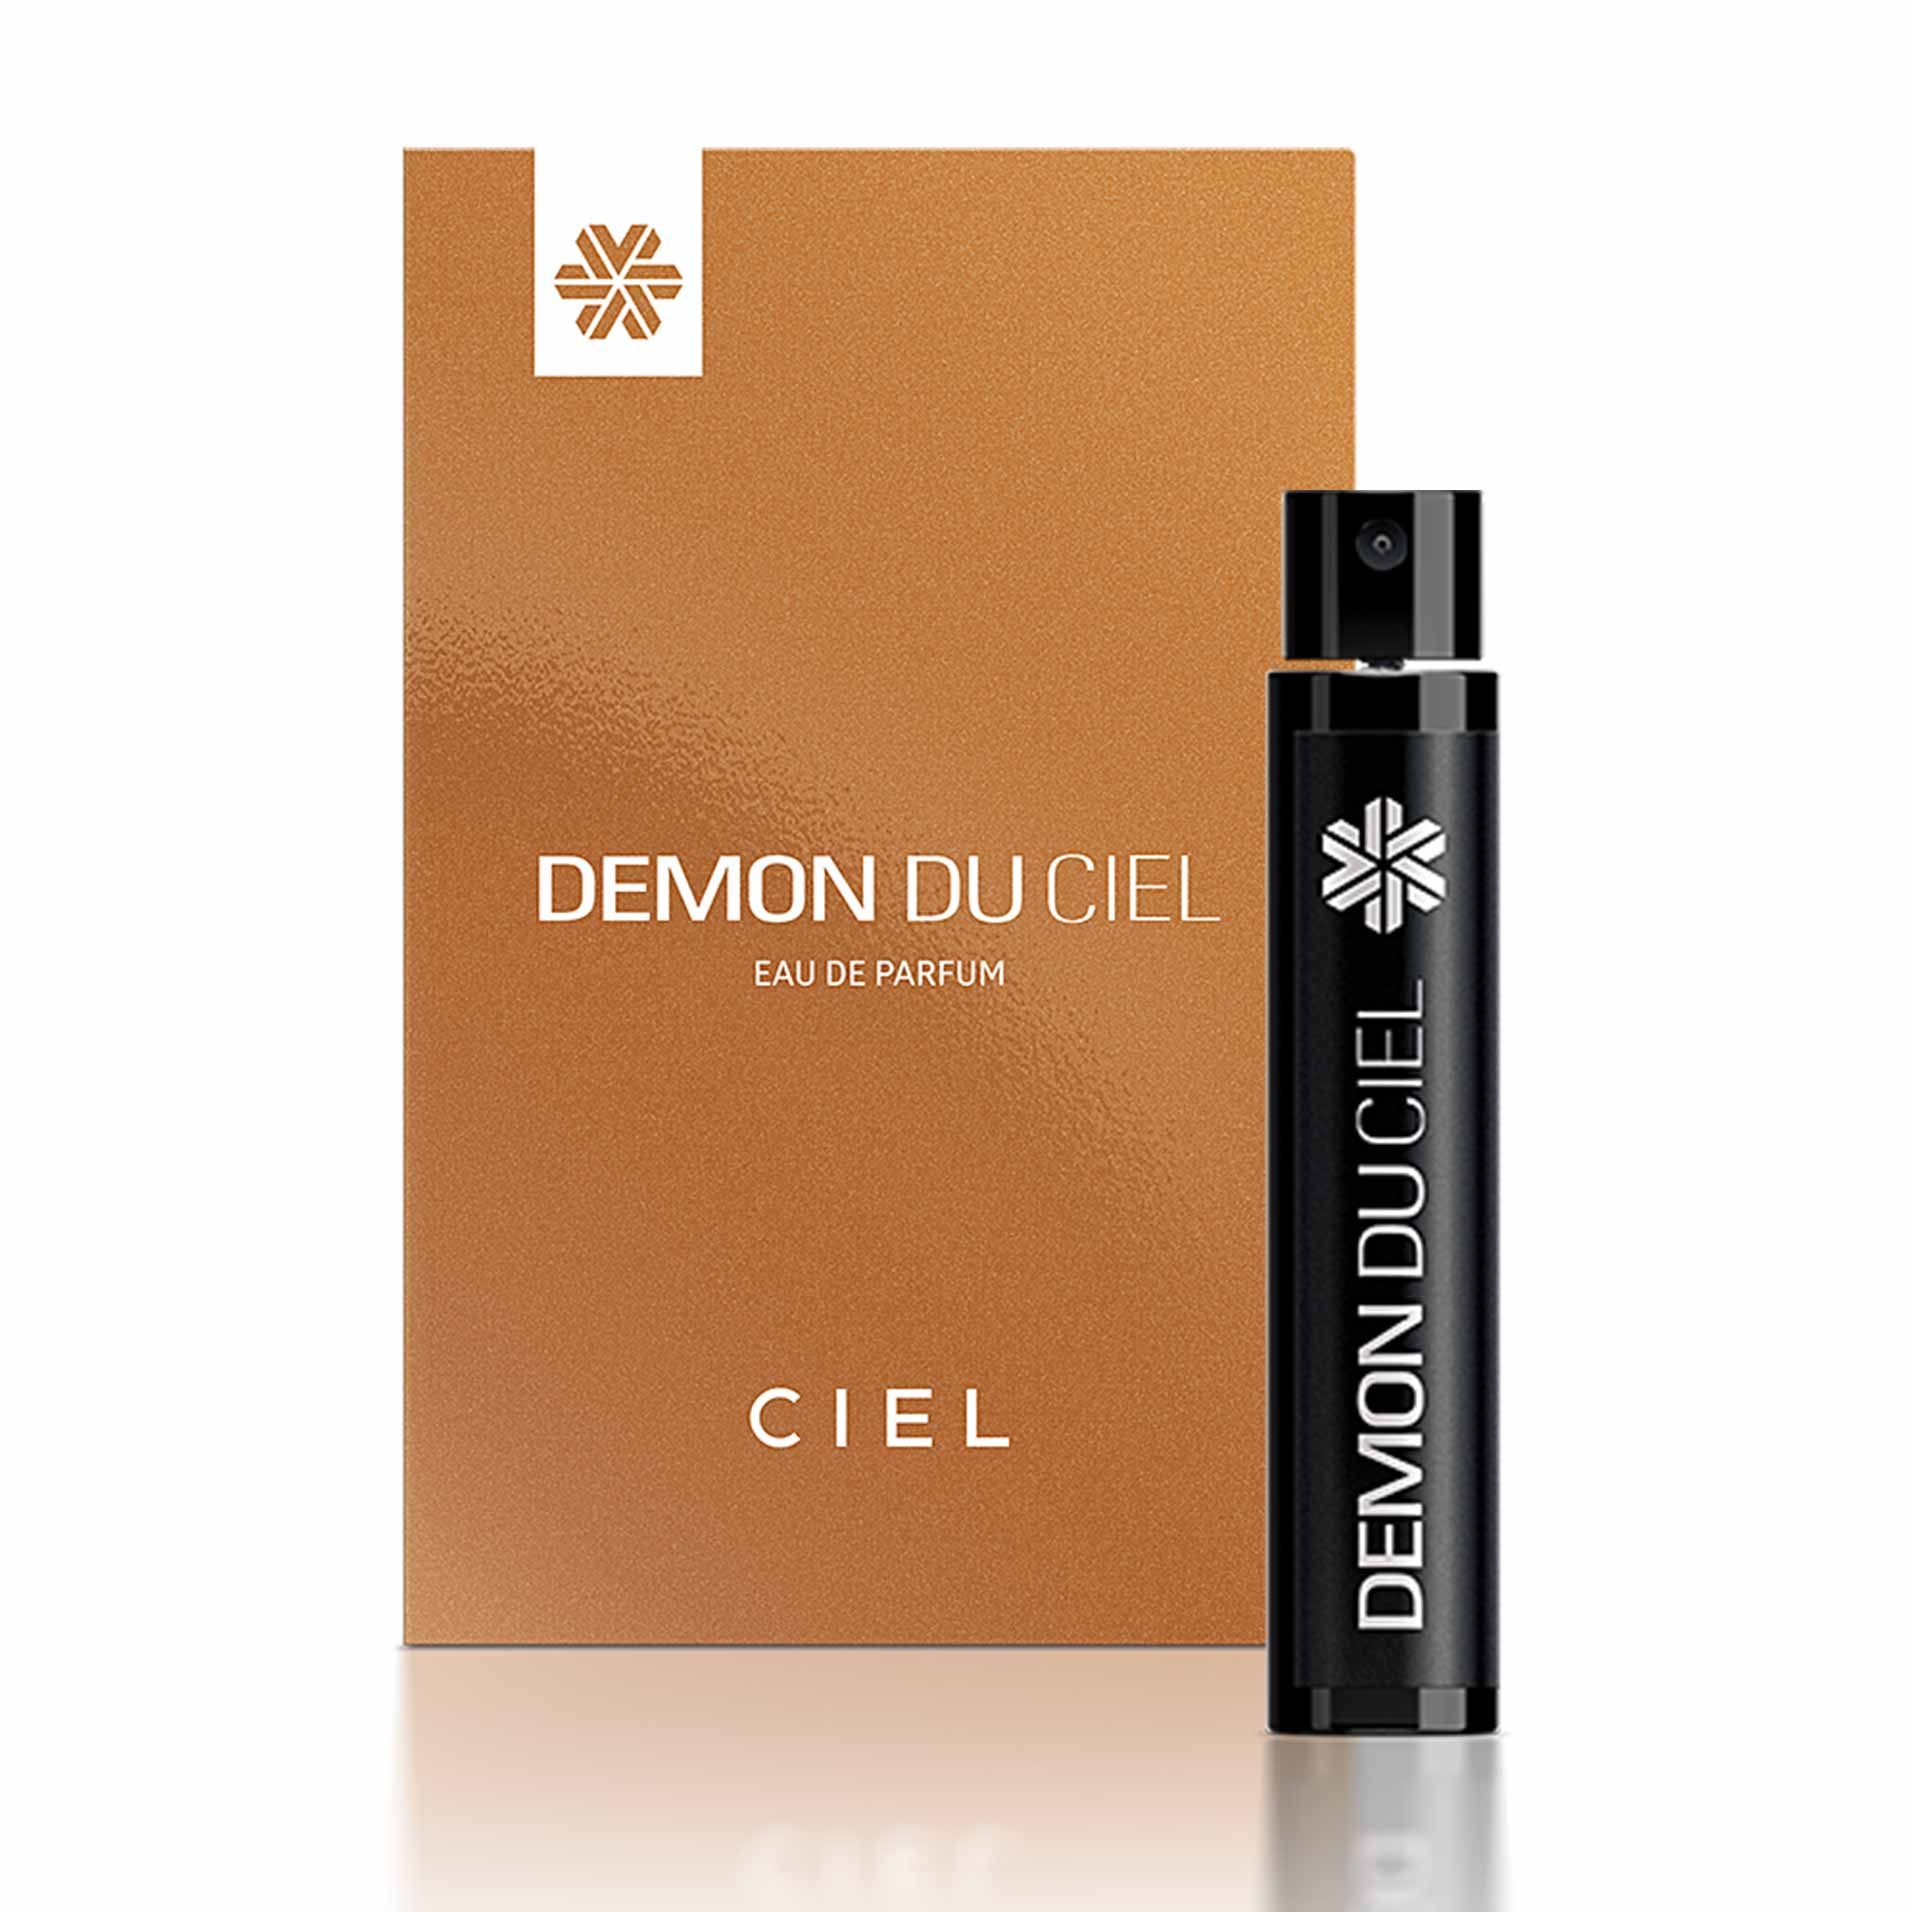 Коллекция ароматов Ciel - Demon du Ciel, парфюмерная вода